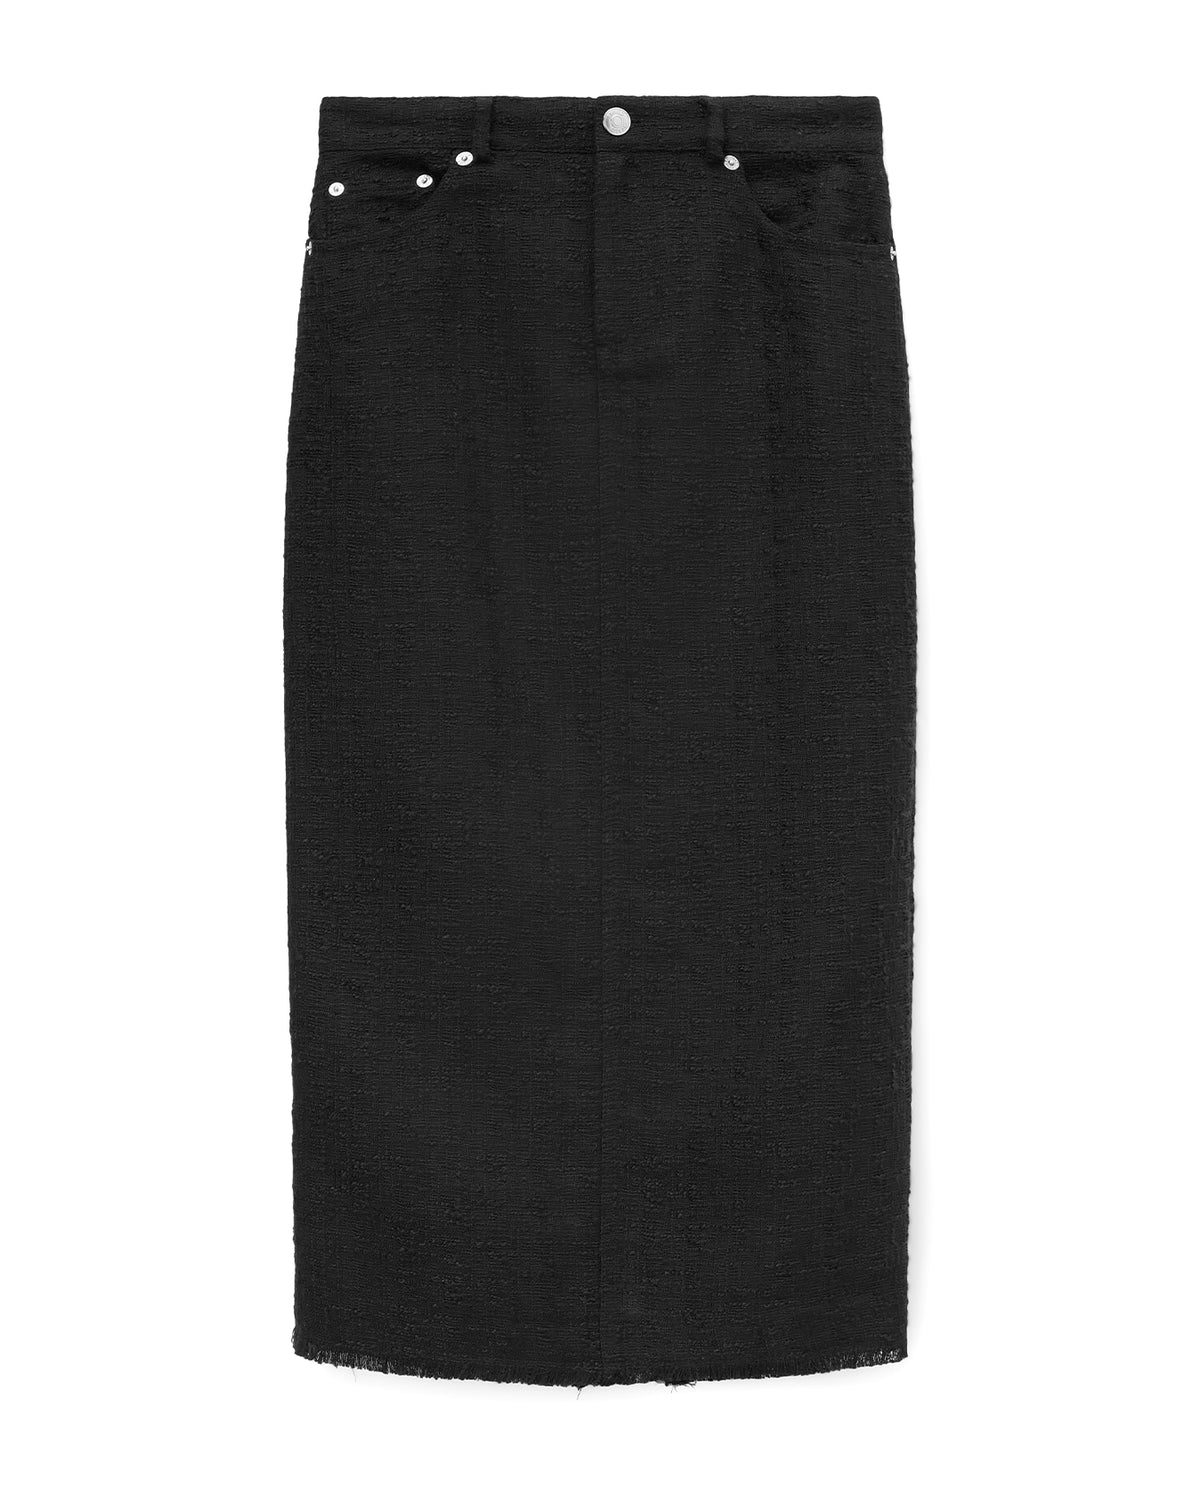 Guinevere Skirt